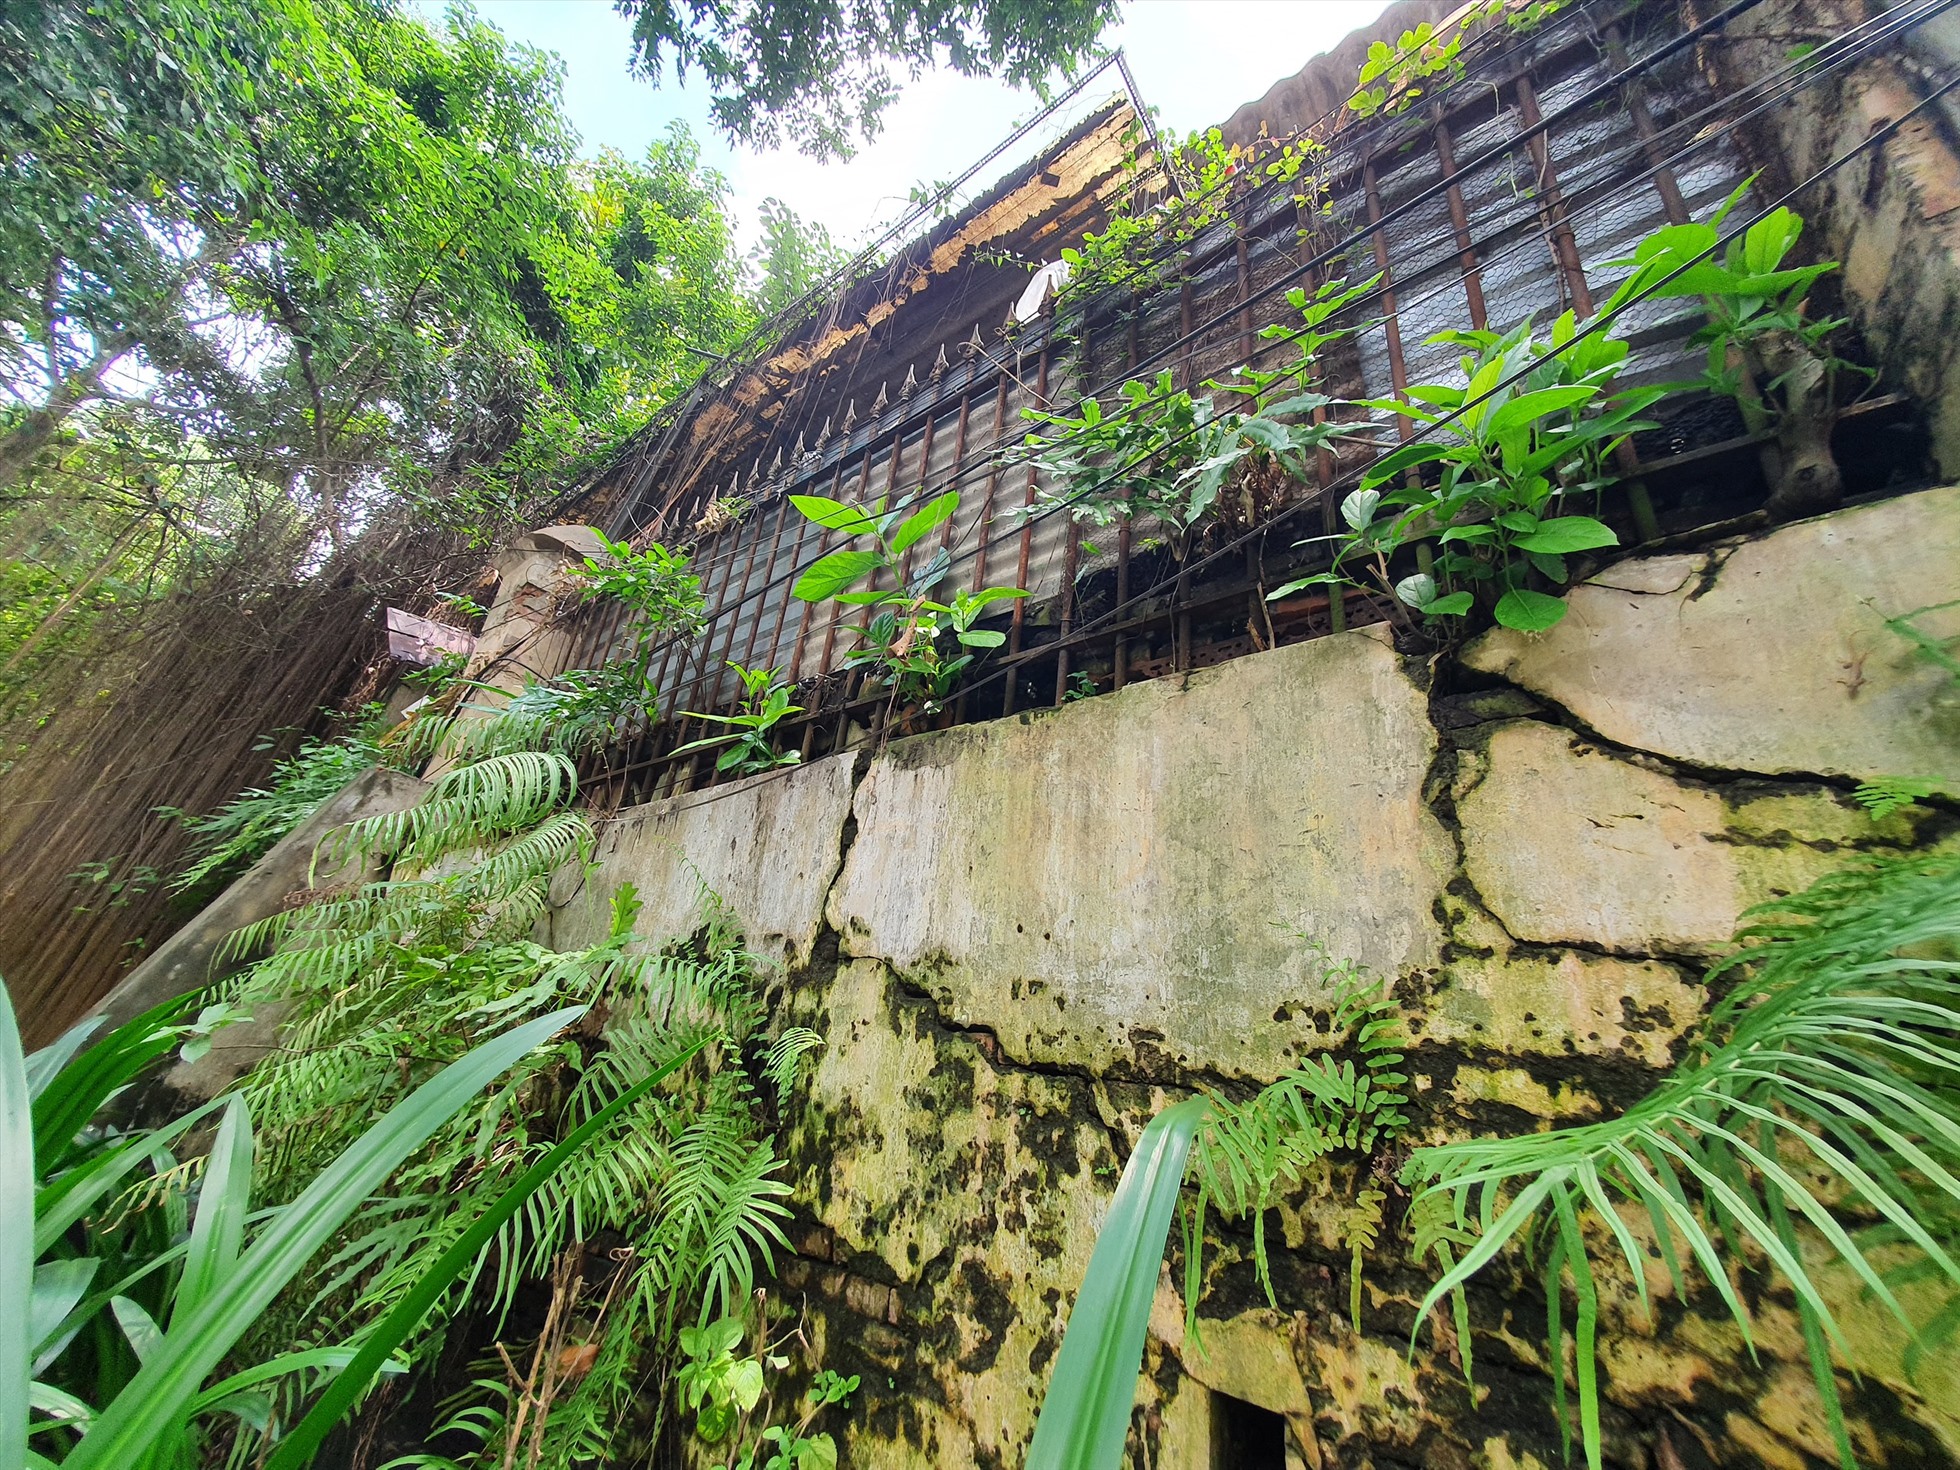 Bức tường bao quanh khu đất số 34-36-42 Chu Mạnh Trinh xảy ra tình trạng nứt gãy, nghiêng về phía trước, nguy cơ đổ sập bất cứ lúc nào.